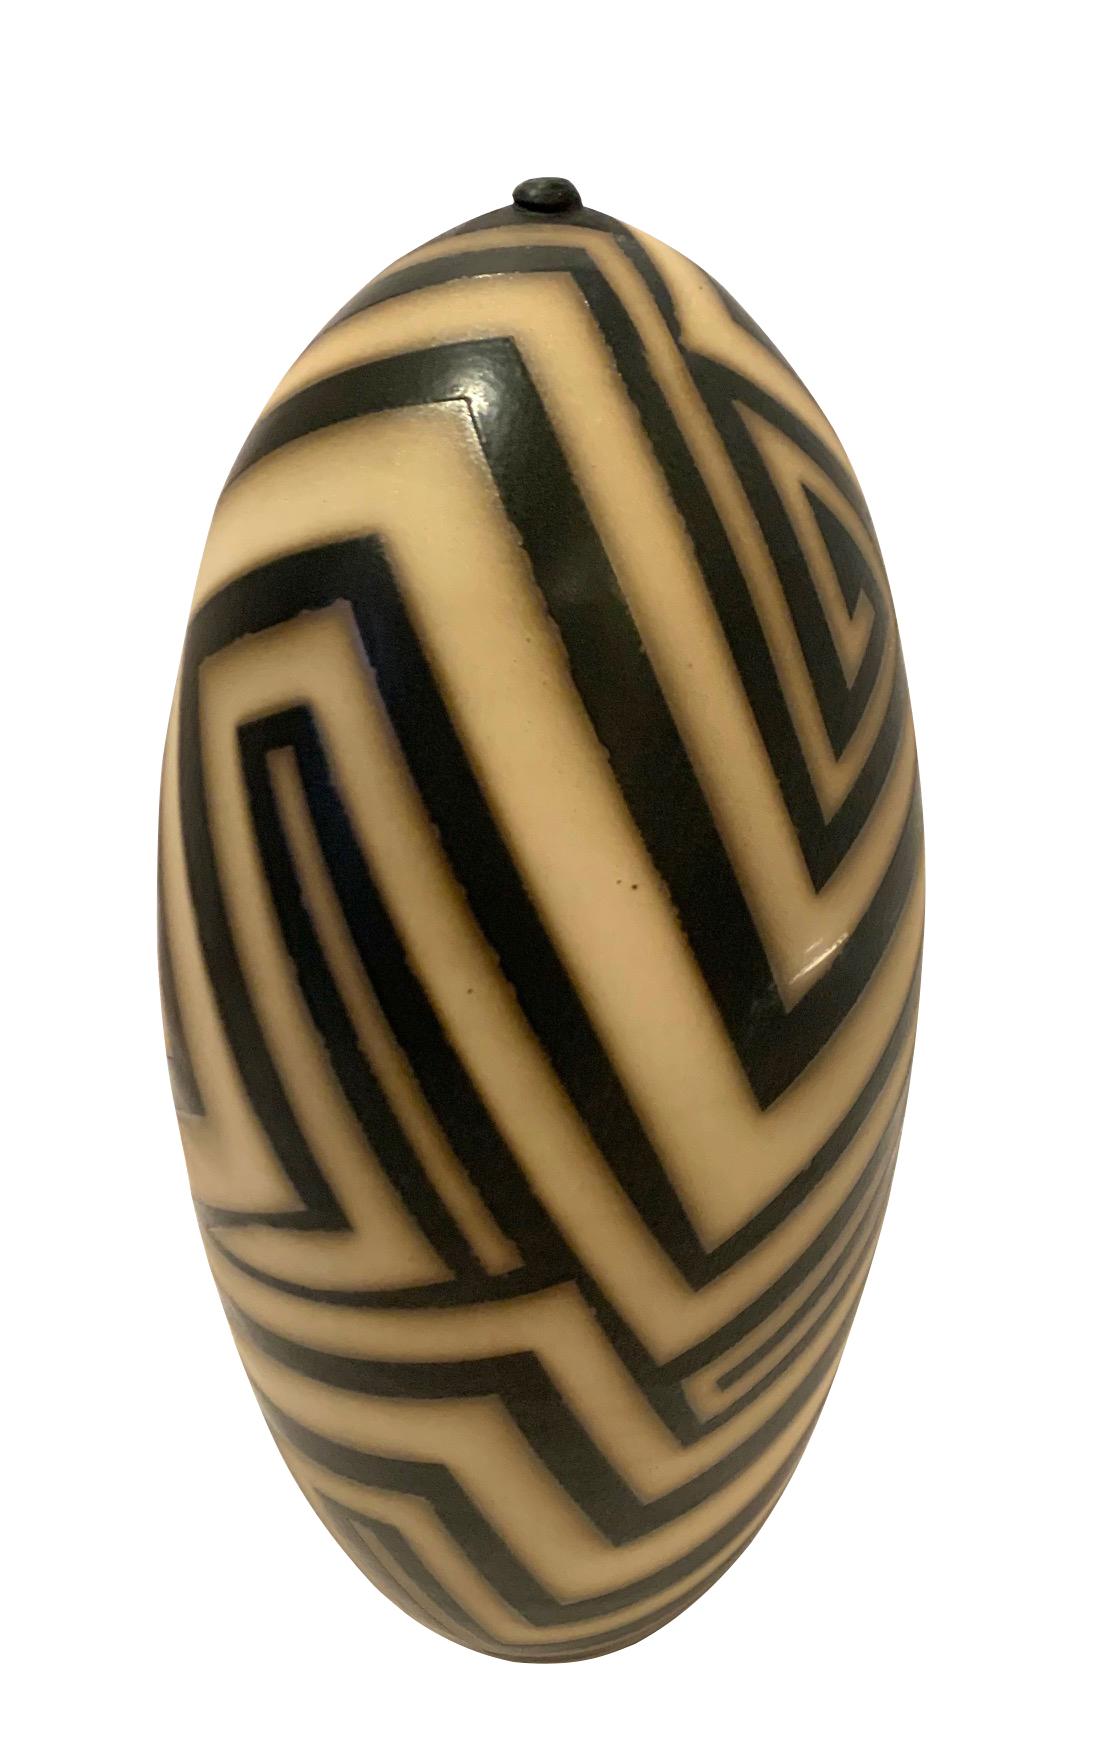 Grès contemporain fabriqué aux États-Unis, à motif de rayures géométriques noires et crème.
Fait à la main, unique en son genre.